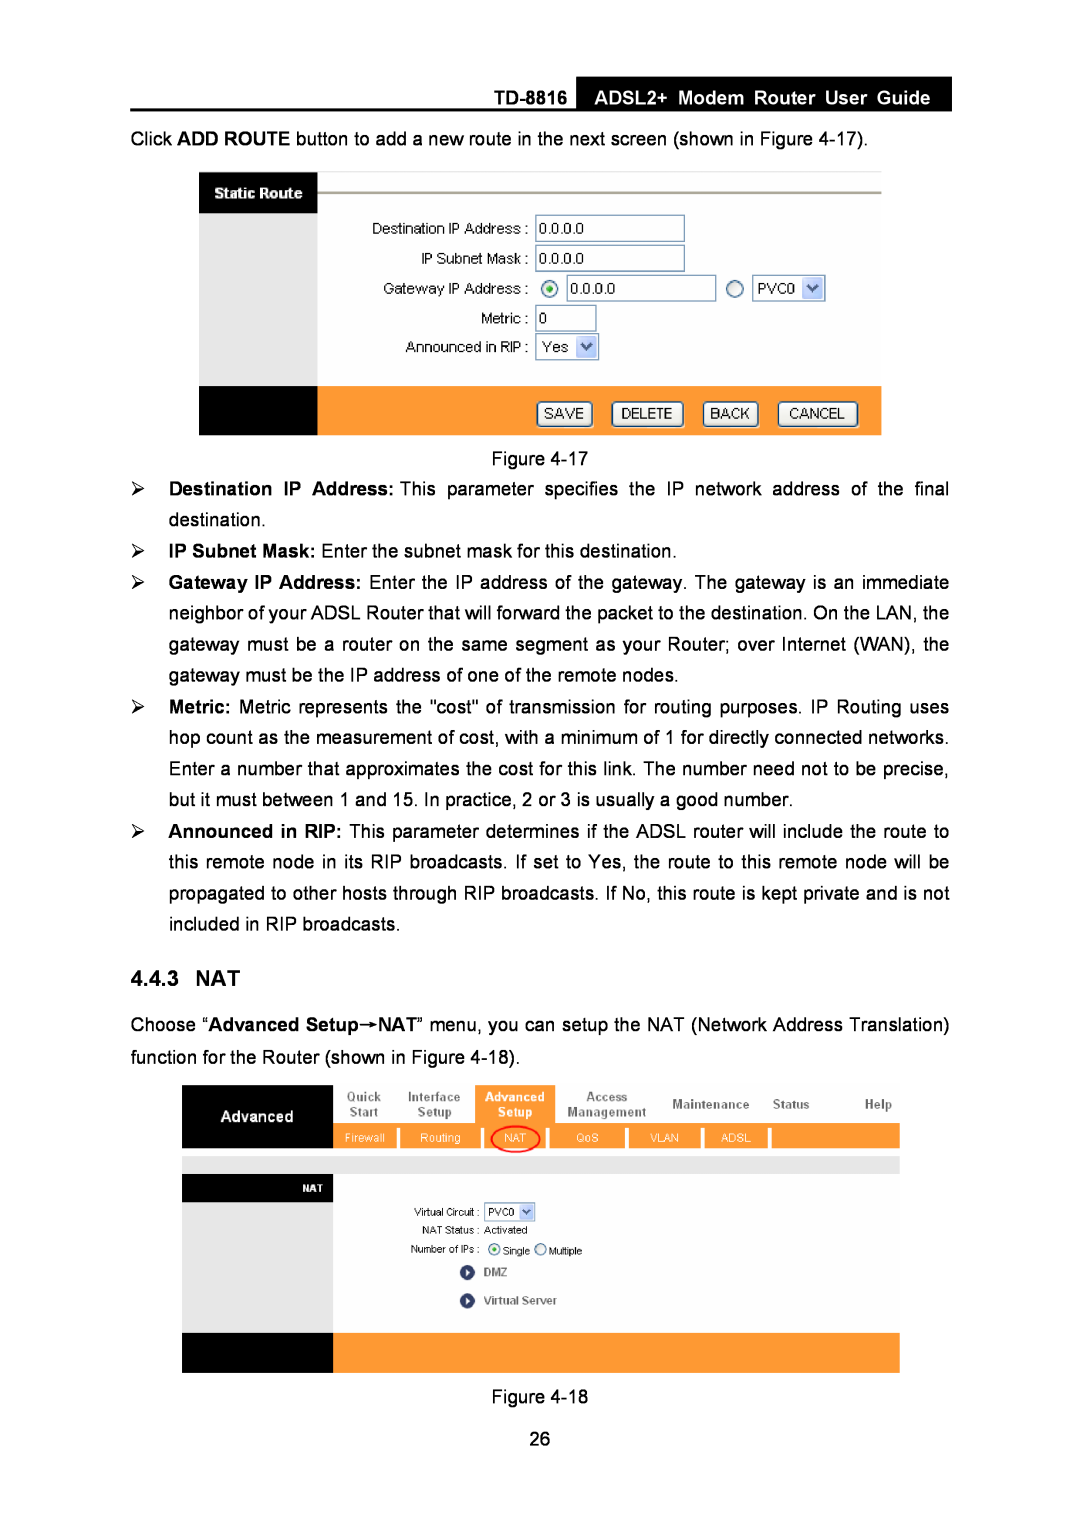 TP-Link TD-8816 manual 4.4.3 NAT, ADSL2+ Modem Router User Guide 